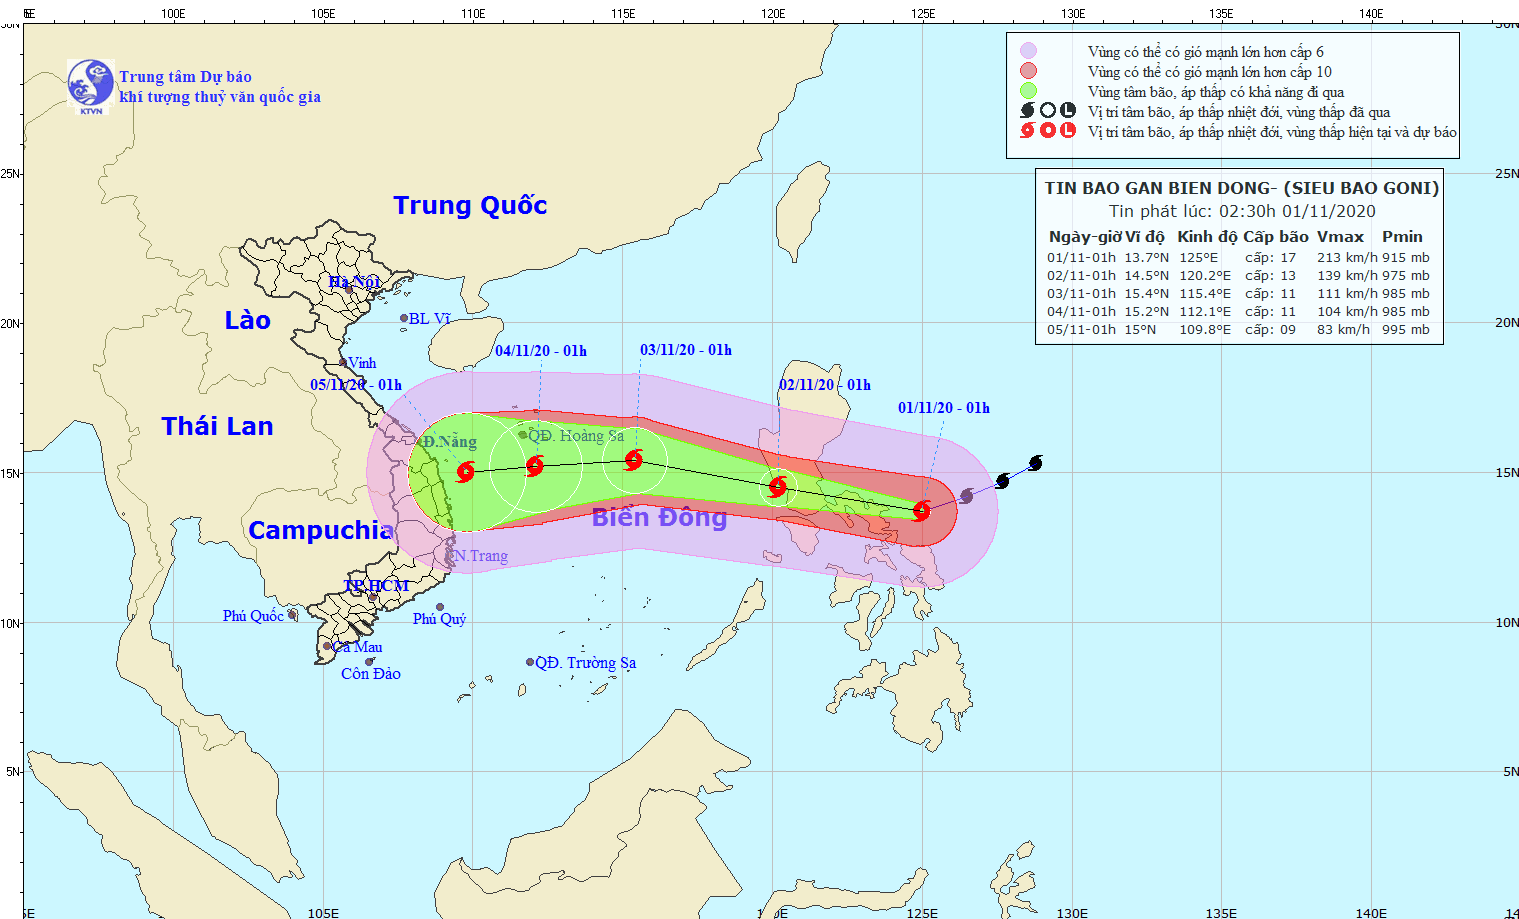 Siêu bão Goni sức gió 220km/h vào Biển Đông, dân miền Trung lại lo lắng 